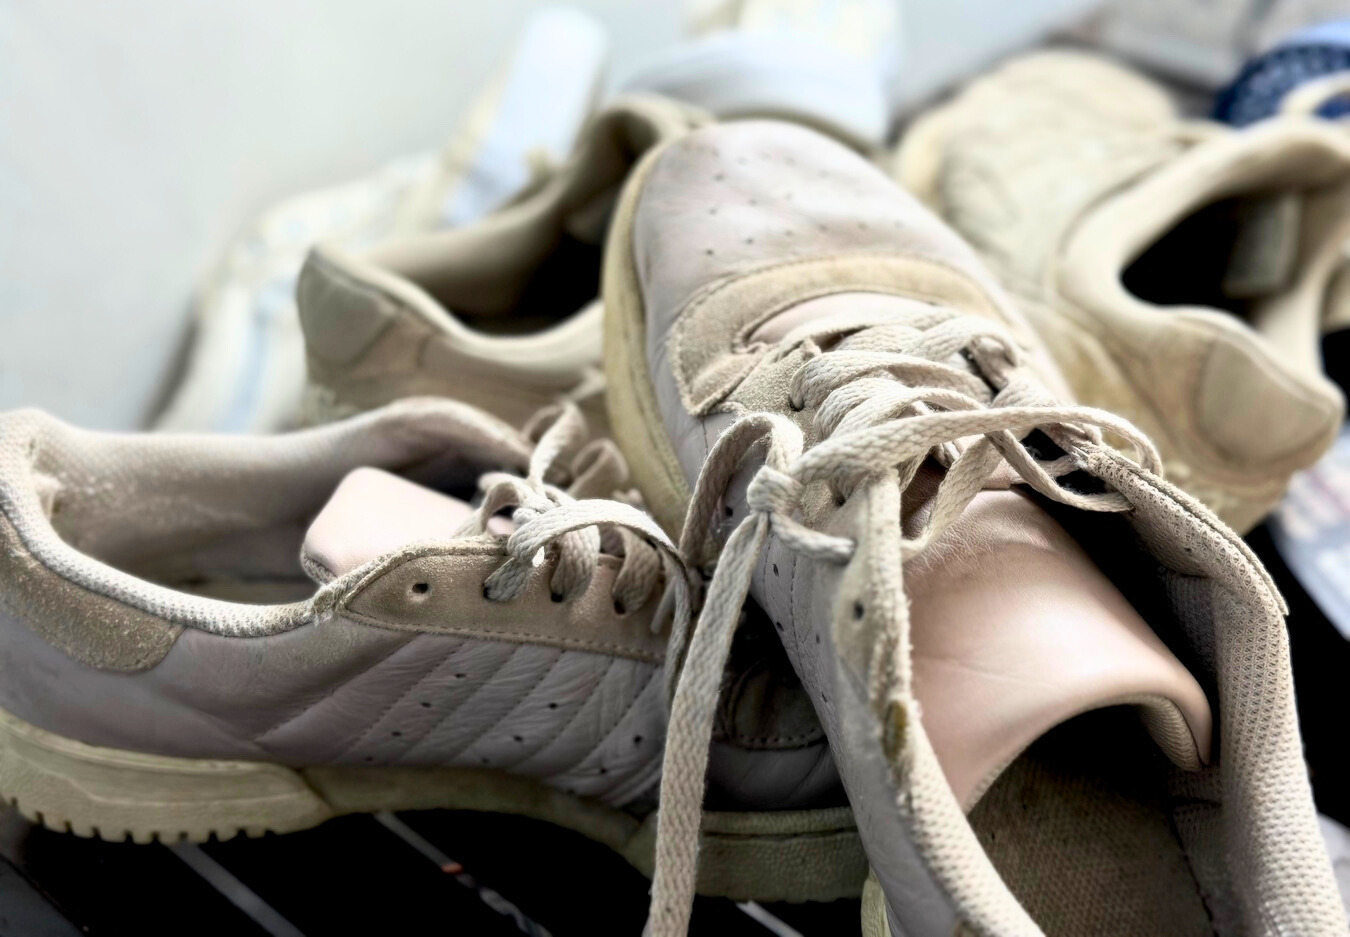 Kit de nettoyage pour sneakers Tarrago - Accessoires Chaussures